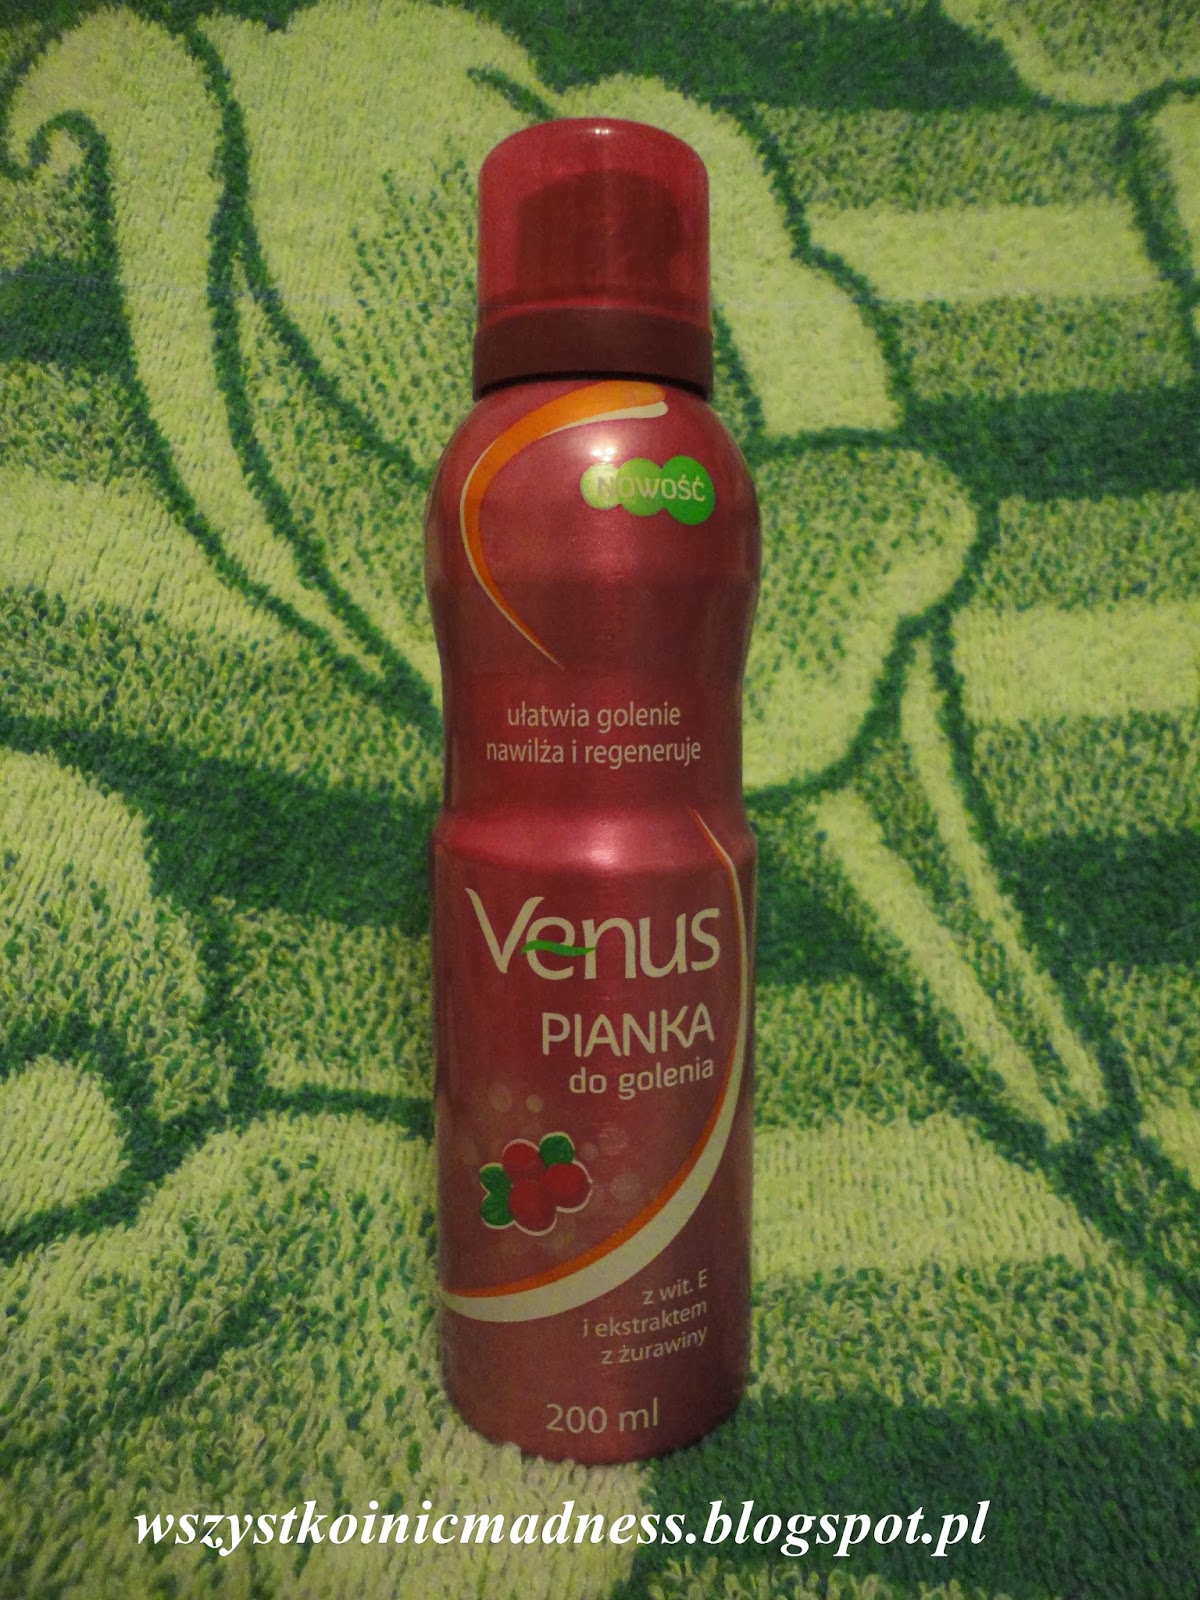 Z mojej strony lustra: Venus pianka do golenia